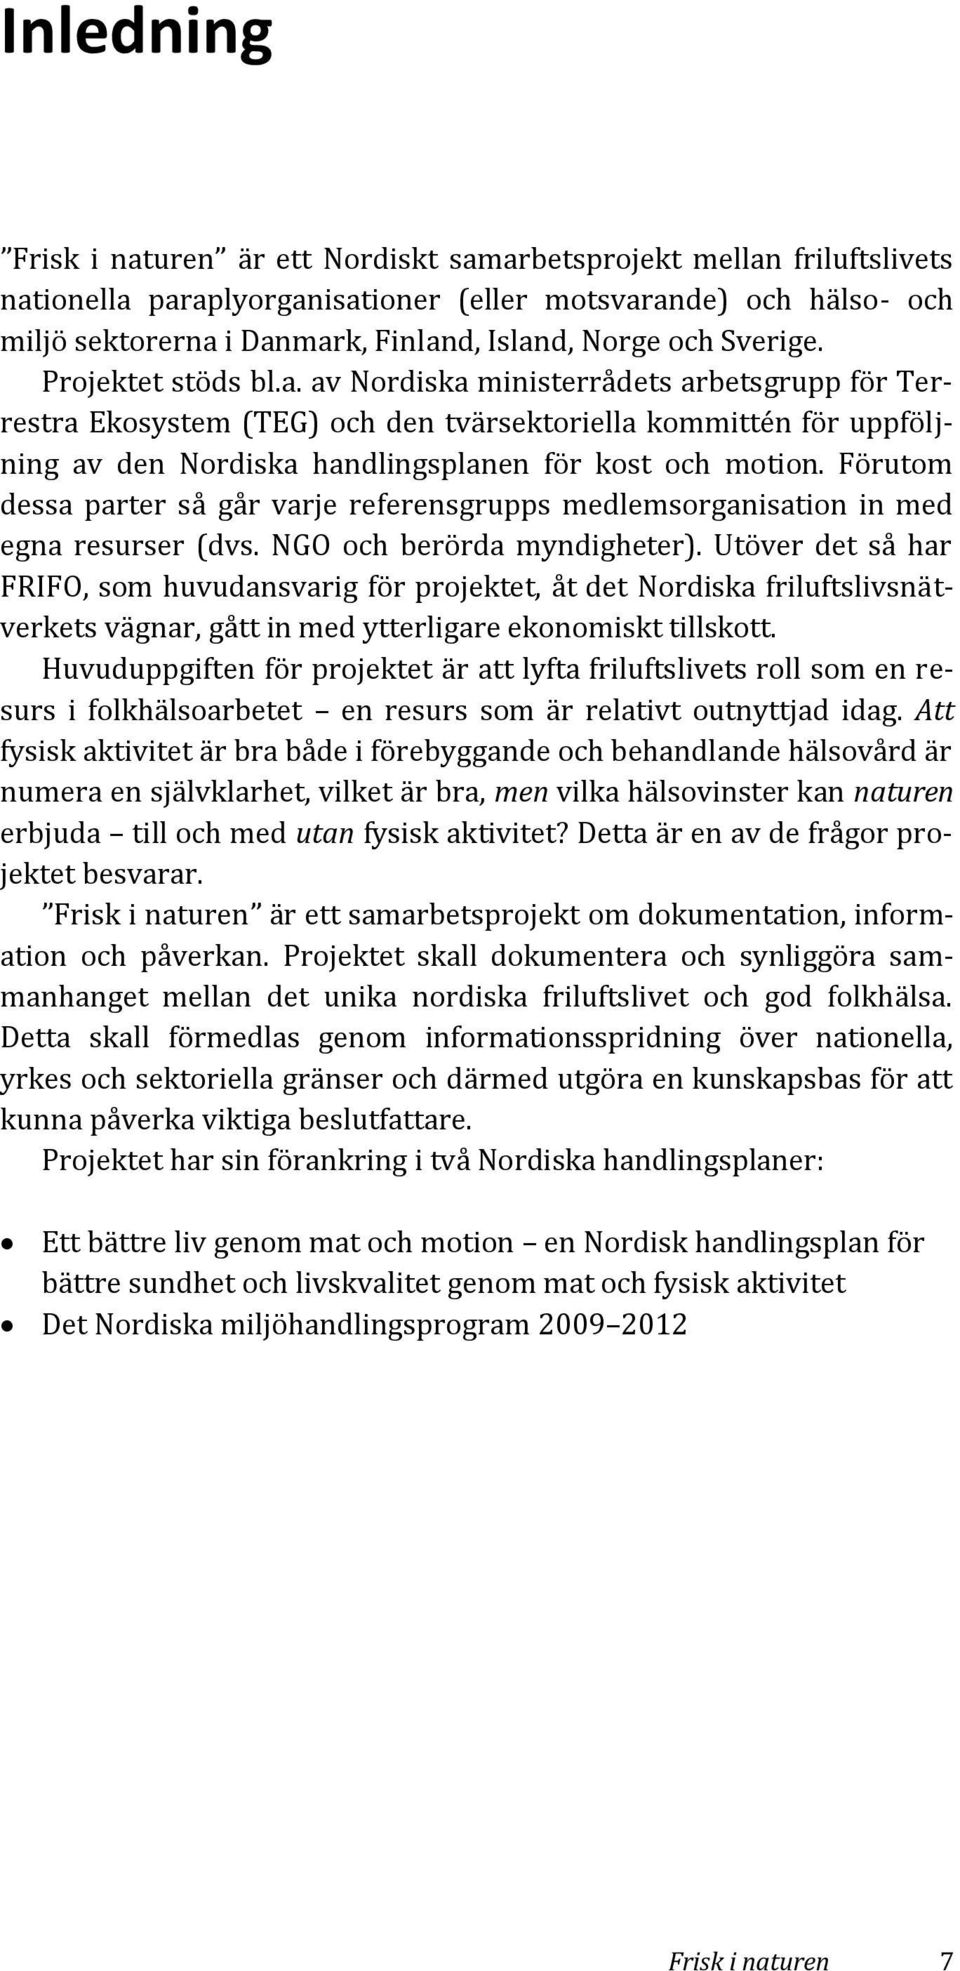 av Nordiska ministerrådets arbetsgrupp för Terrestra Ekosystem (TEG) och den tvärsektoriella kommittén för uppföljning av den Nordiska handlingsplanen för kost och motion.